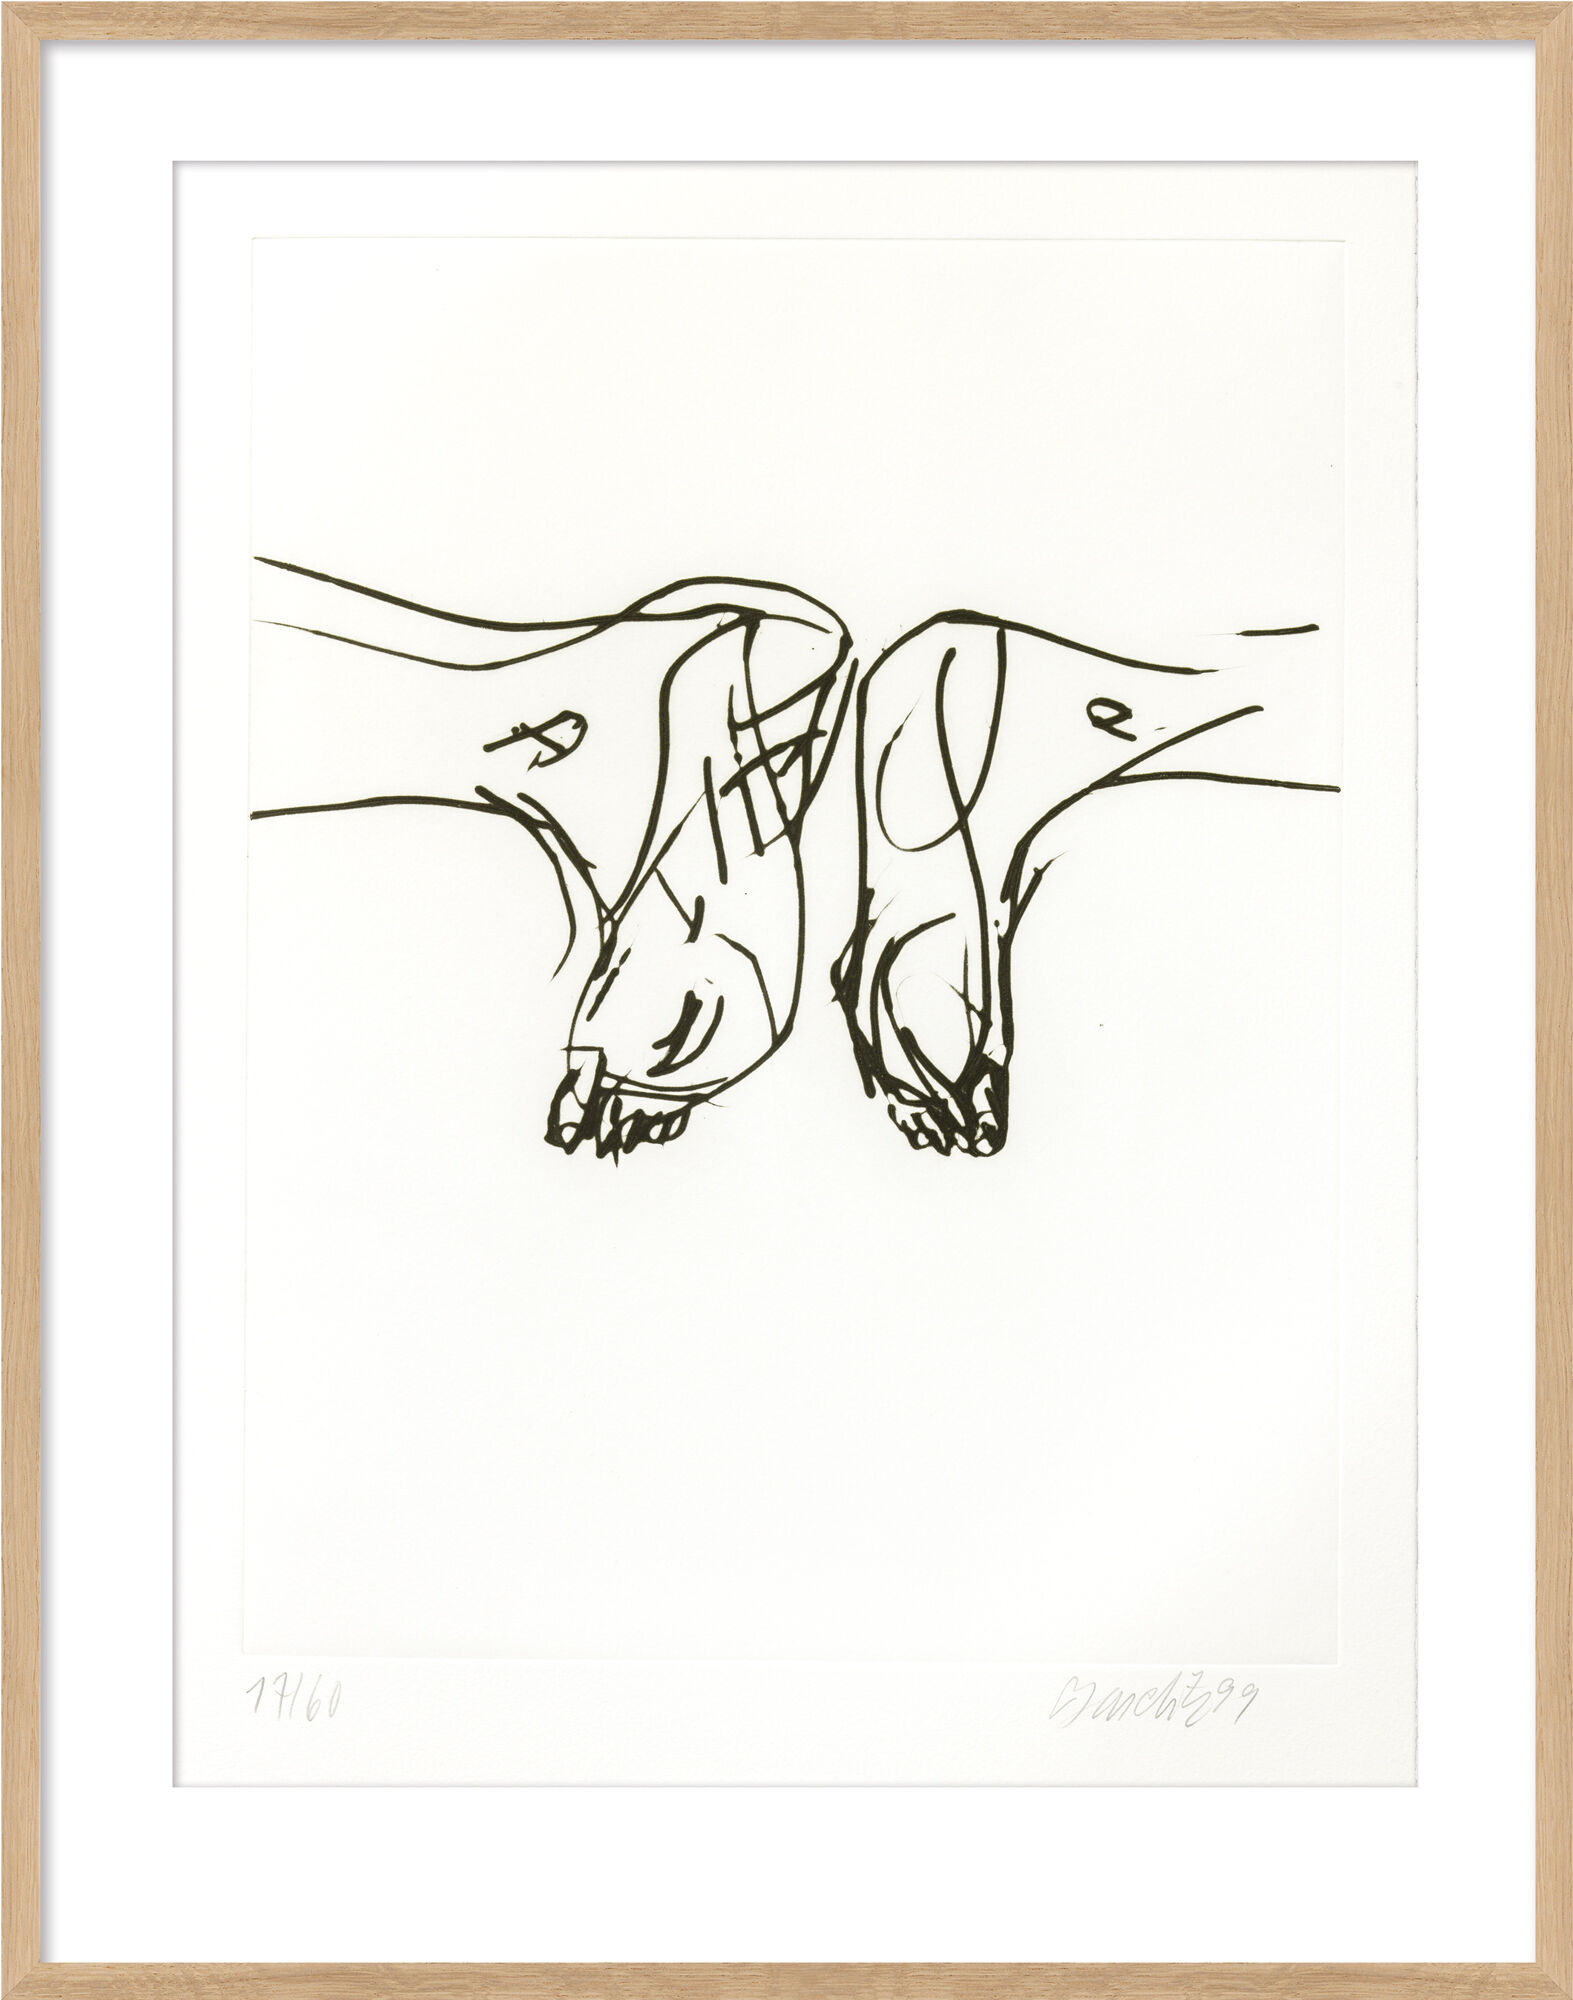 Tableau "Untitled VIII" du portfolio "Signs" (1999/2000) von Georg Baselitz